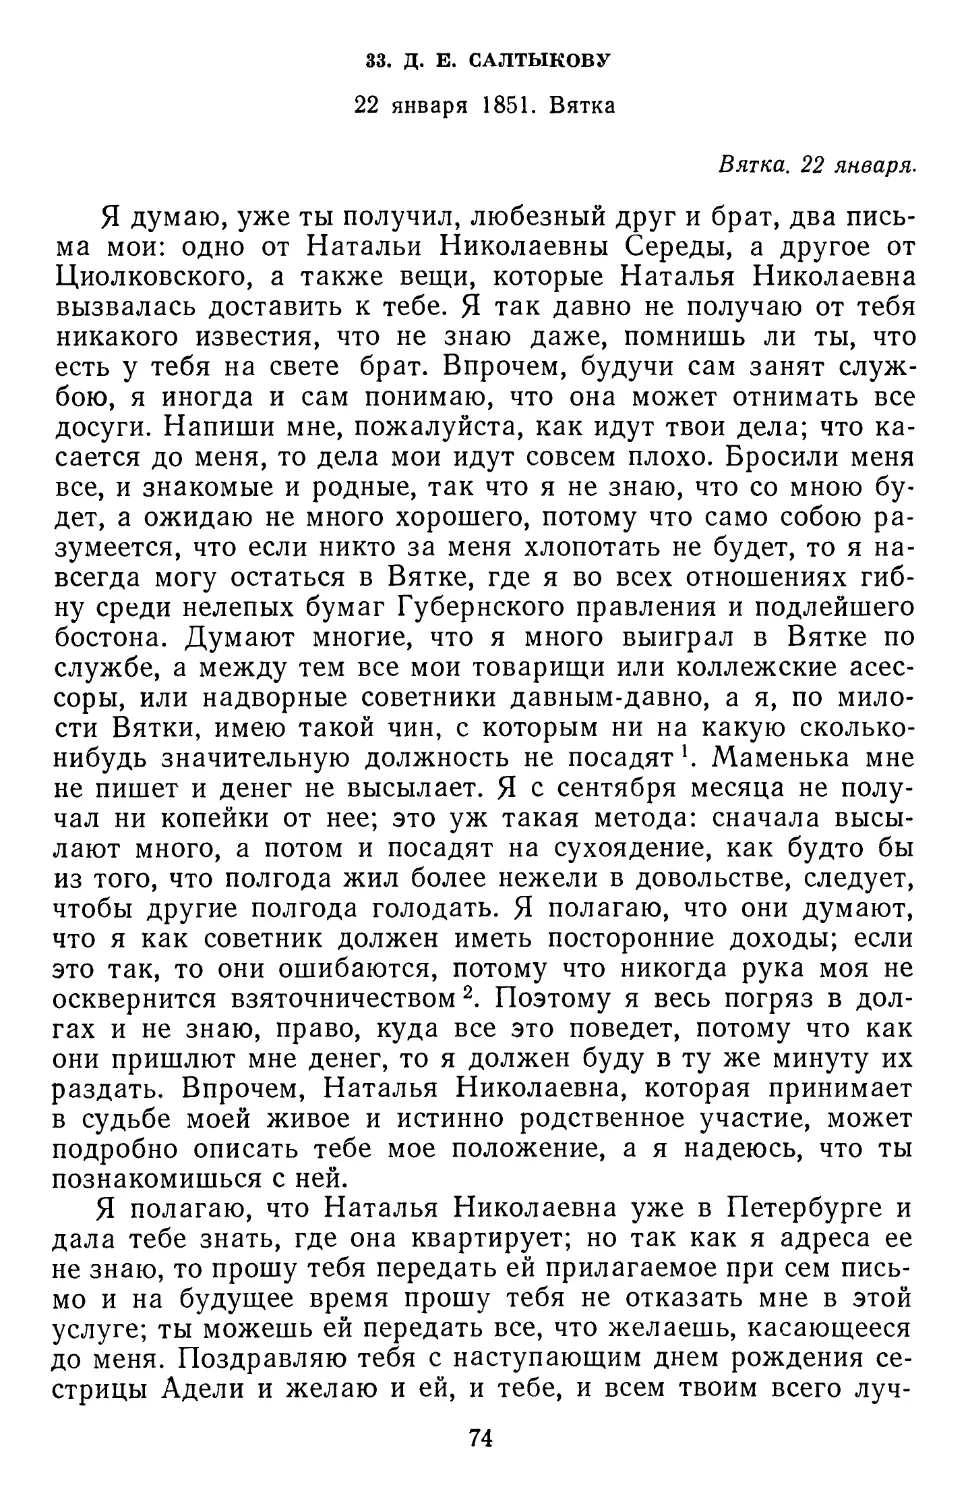 33.Д. Е. Салтыкову. 22 января 1851.Вятка